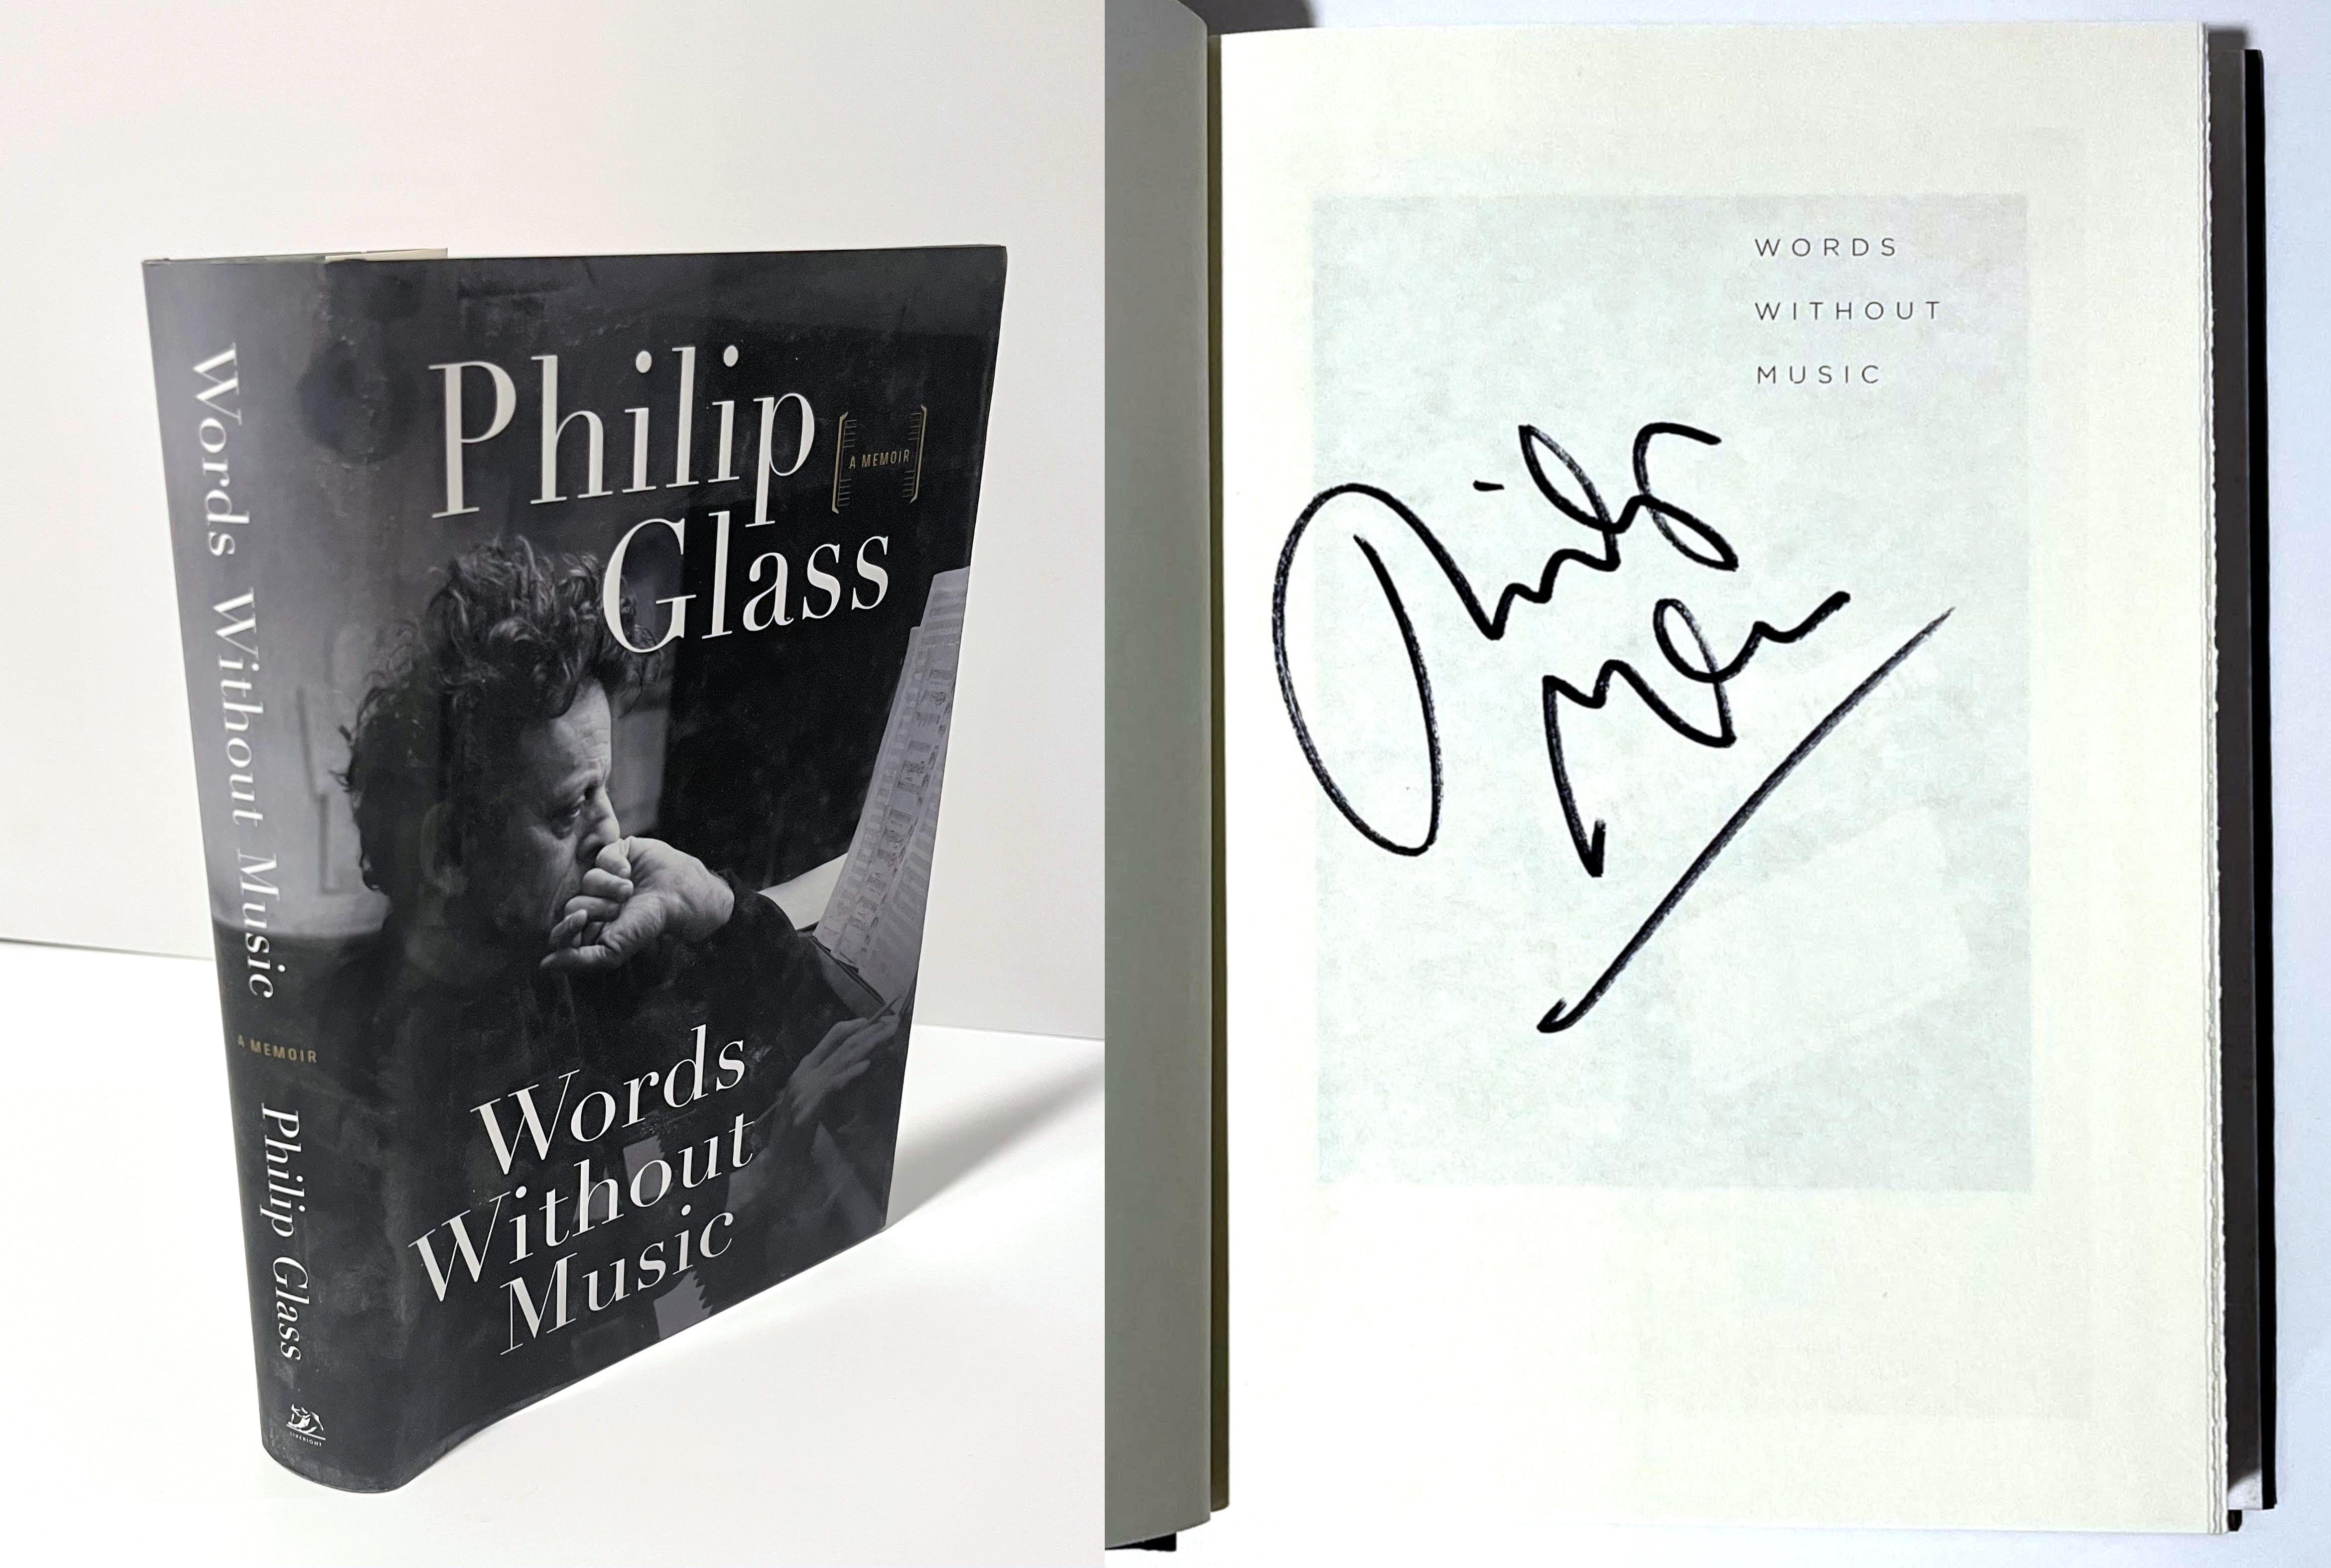 Philip Glass Words Without Music (handsigniert von Philip Glass), 2015
Gebundene Monografie mit Schutzumschlag (handsigniert von Philip Glass)
Handsigniert von Philip Glass auf der halben Titelseite
9 1/2 × 6 1/2 × 1 1/4 Zoll
Handsigniert von Philip